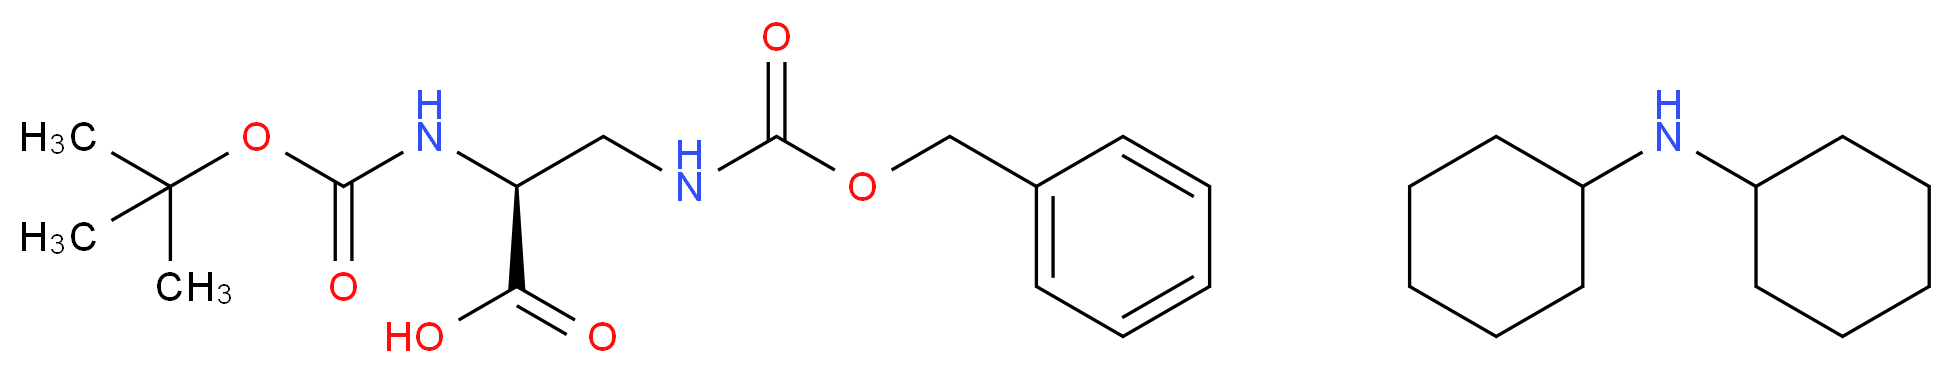 Boc-Dap(Z)-OH (dicyclohexylammonium) salt_Molecular_structure_CAS_65710-58-9)